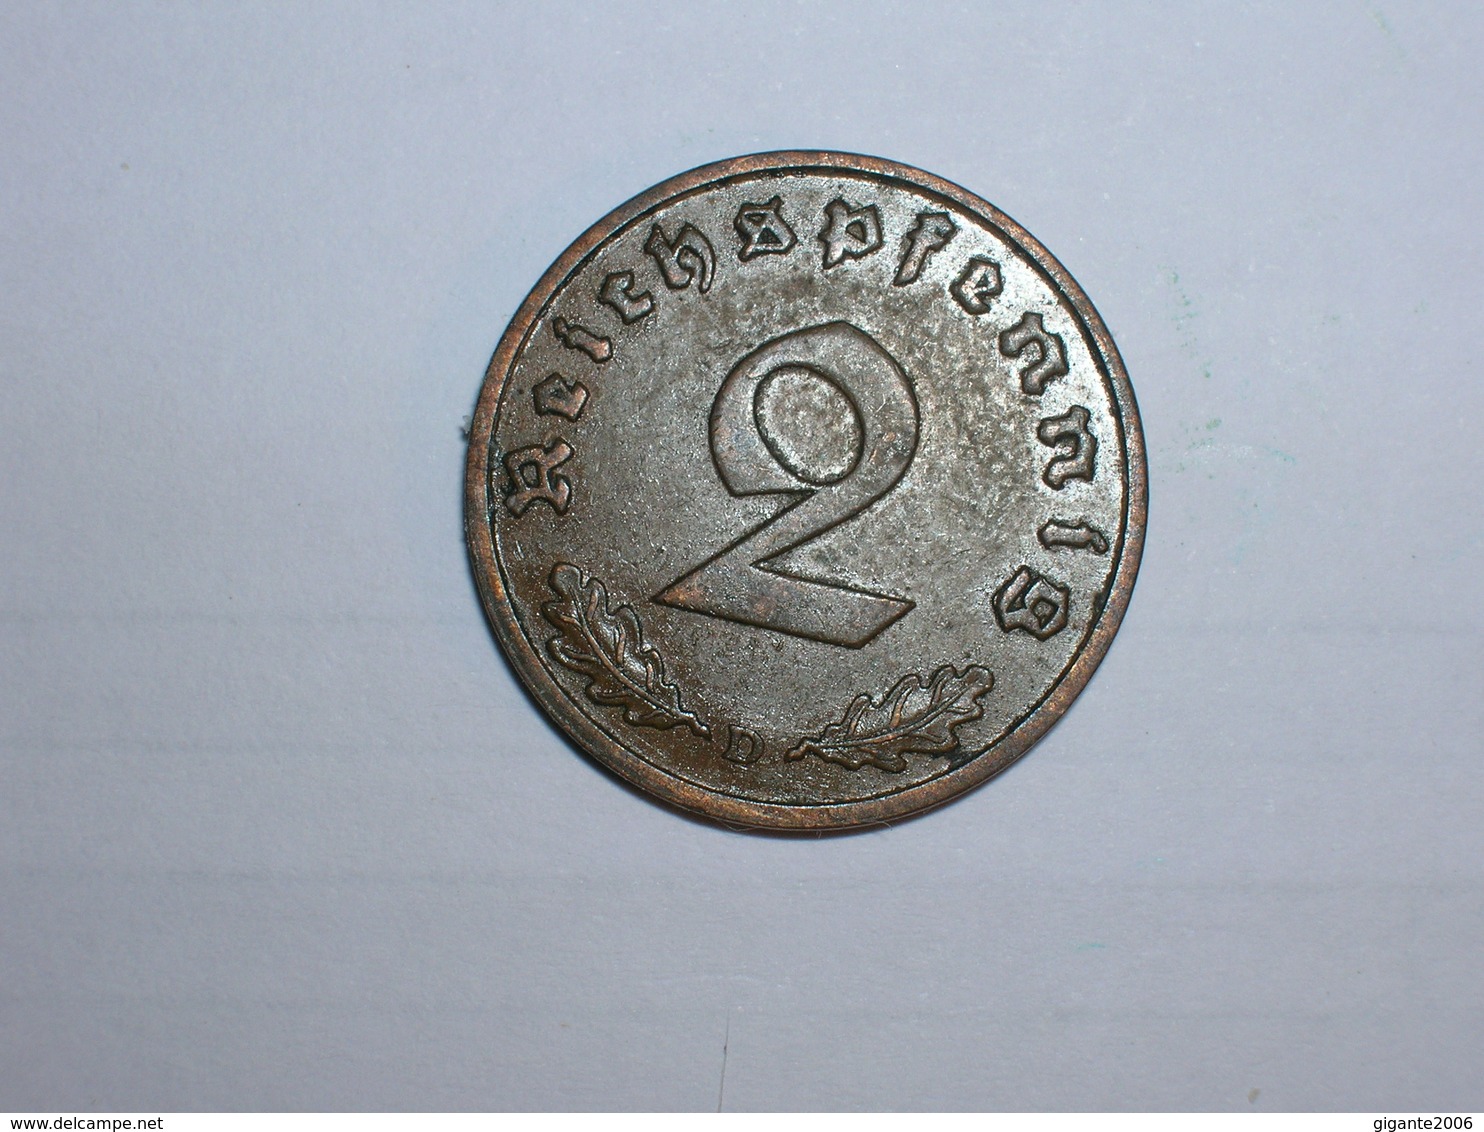 ALEMANIA- 2 PFENNIG 1936 D (934) - 2 Reichspfennig